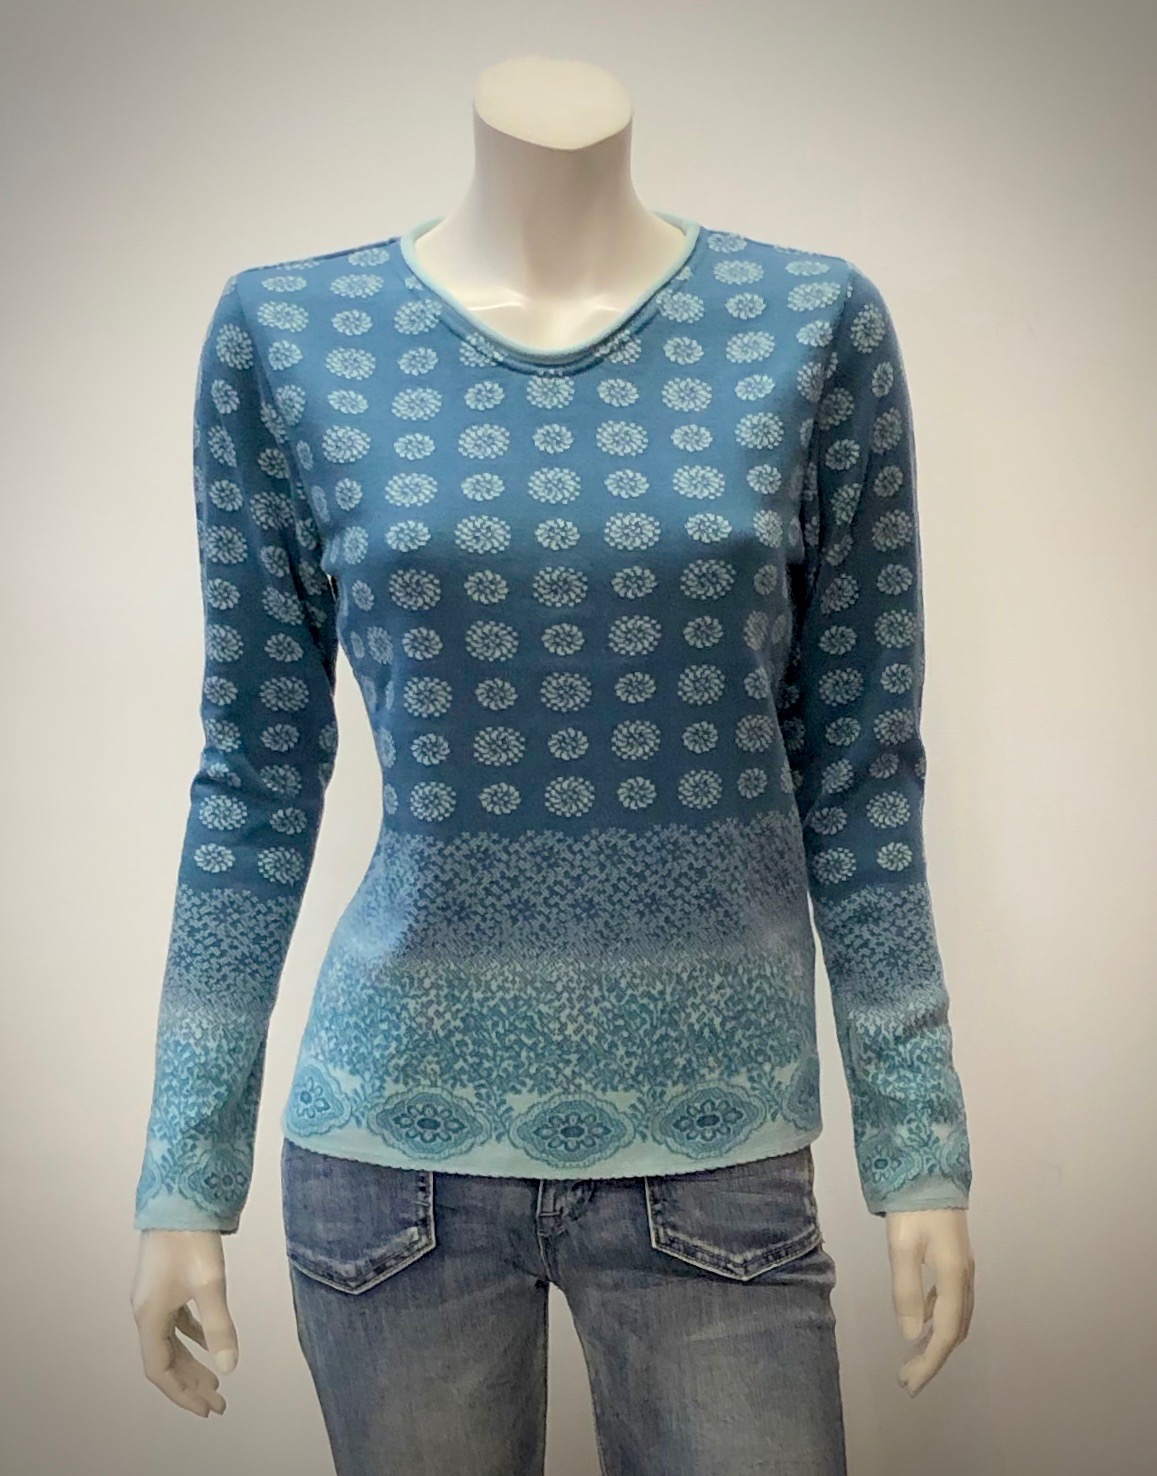 Jacquard-Strick-Pullover GOTS aus Organic Baumwolle in stahlblau bunt gemustert von DUNQUE by SCHWEIKARDT MODEN